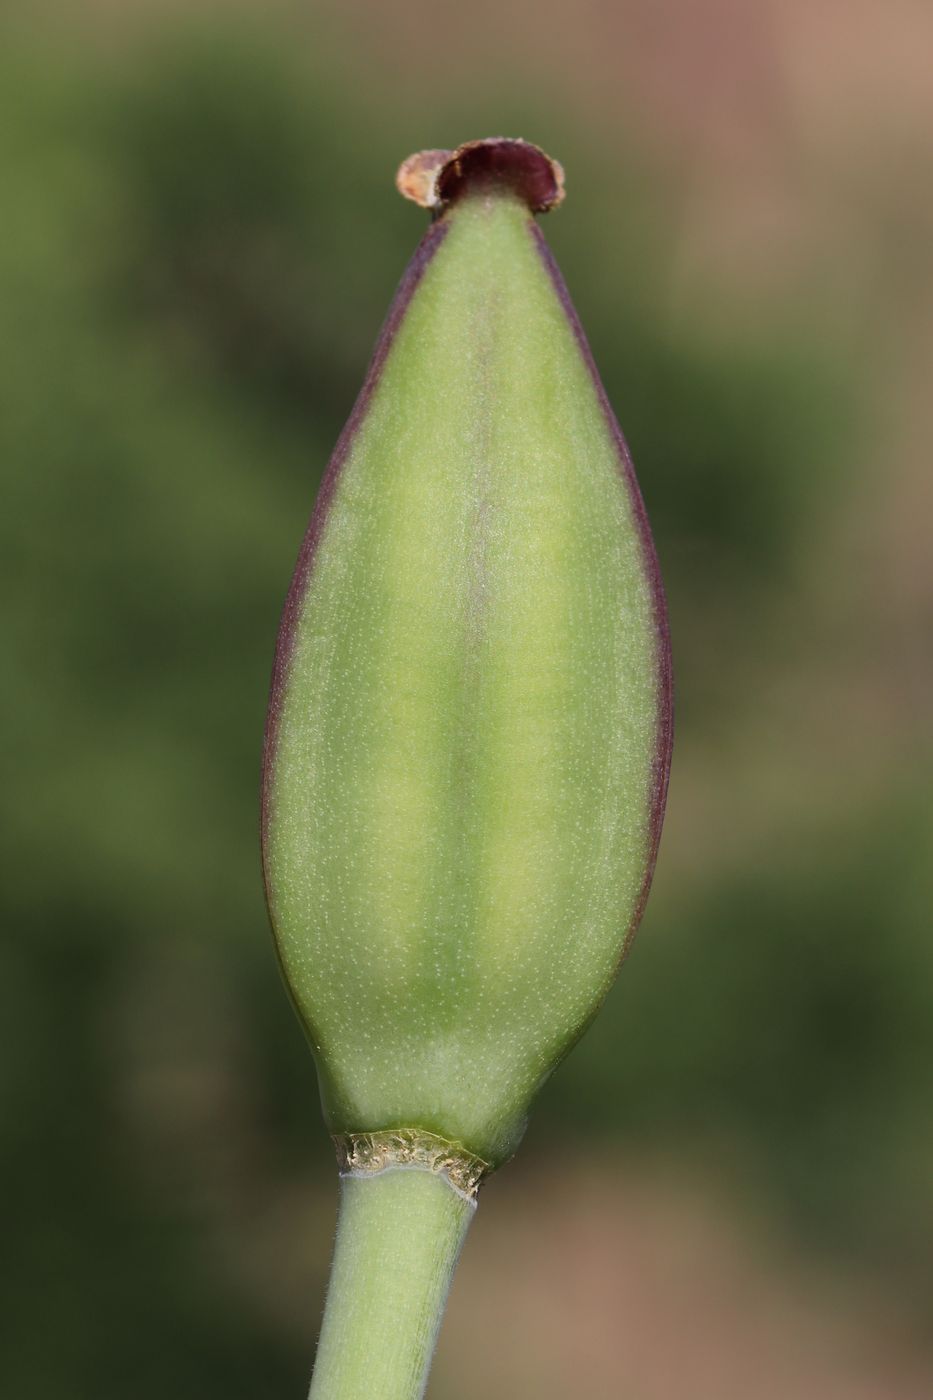 Image of Tulipa vvedenskyi specimen.